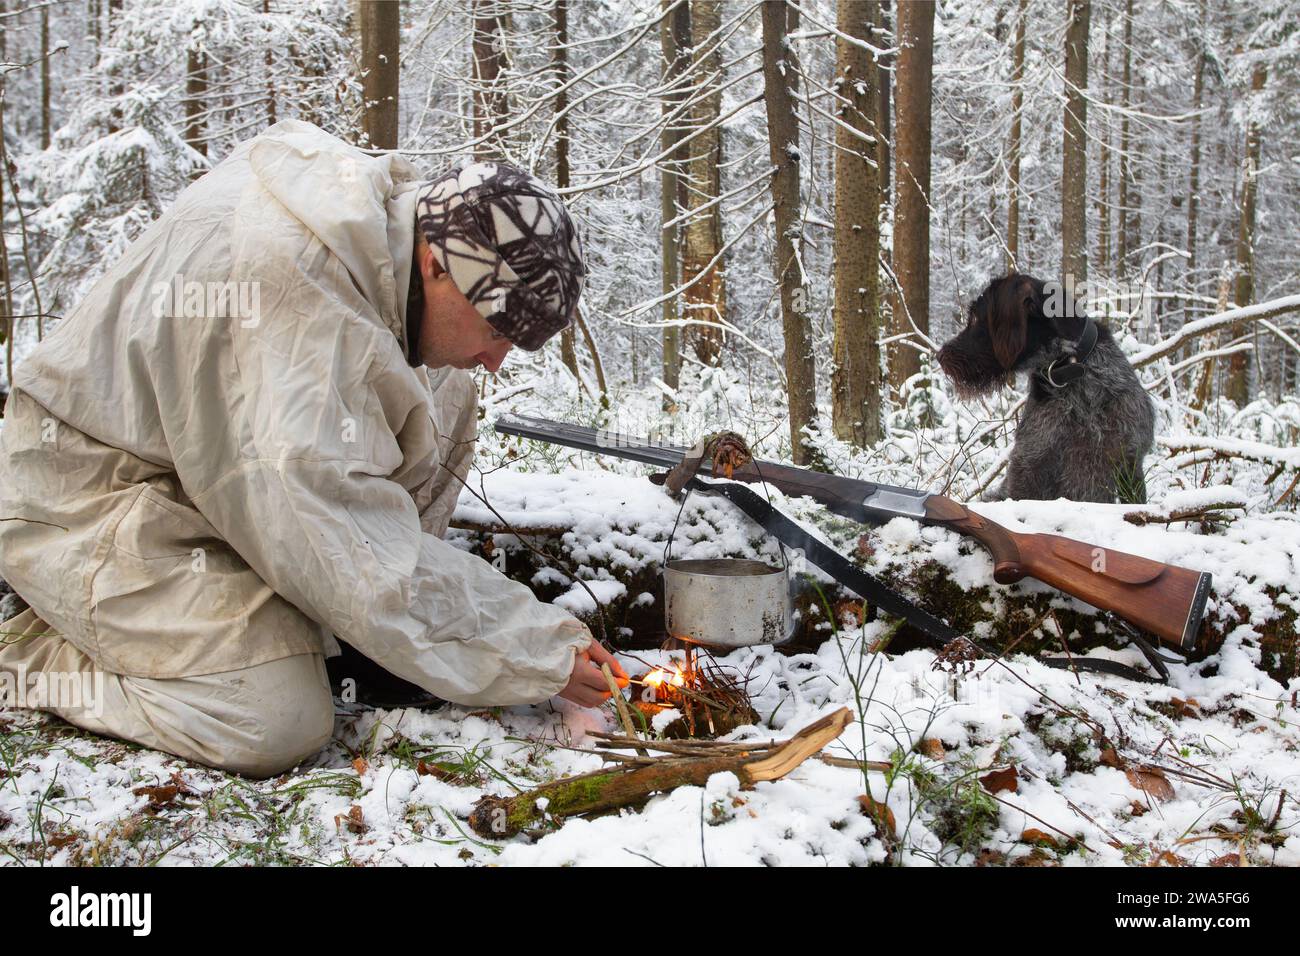 un chasseur vêtu de camouflage blanc tente de construire un feu dans la forêt d'hiver en utilisant des allumettes, et son chien est assis à côté de lui Banque D'Images